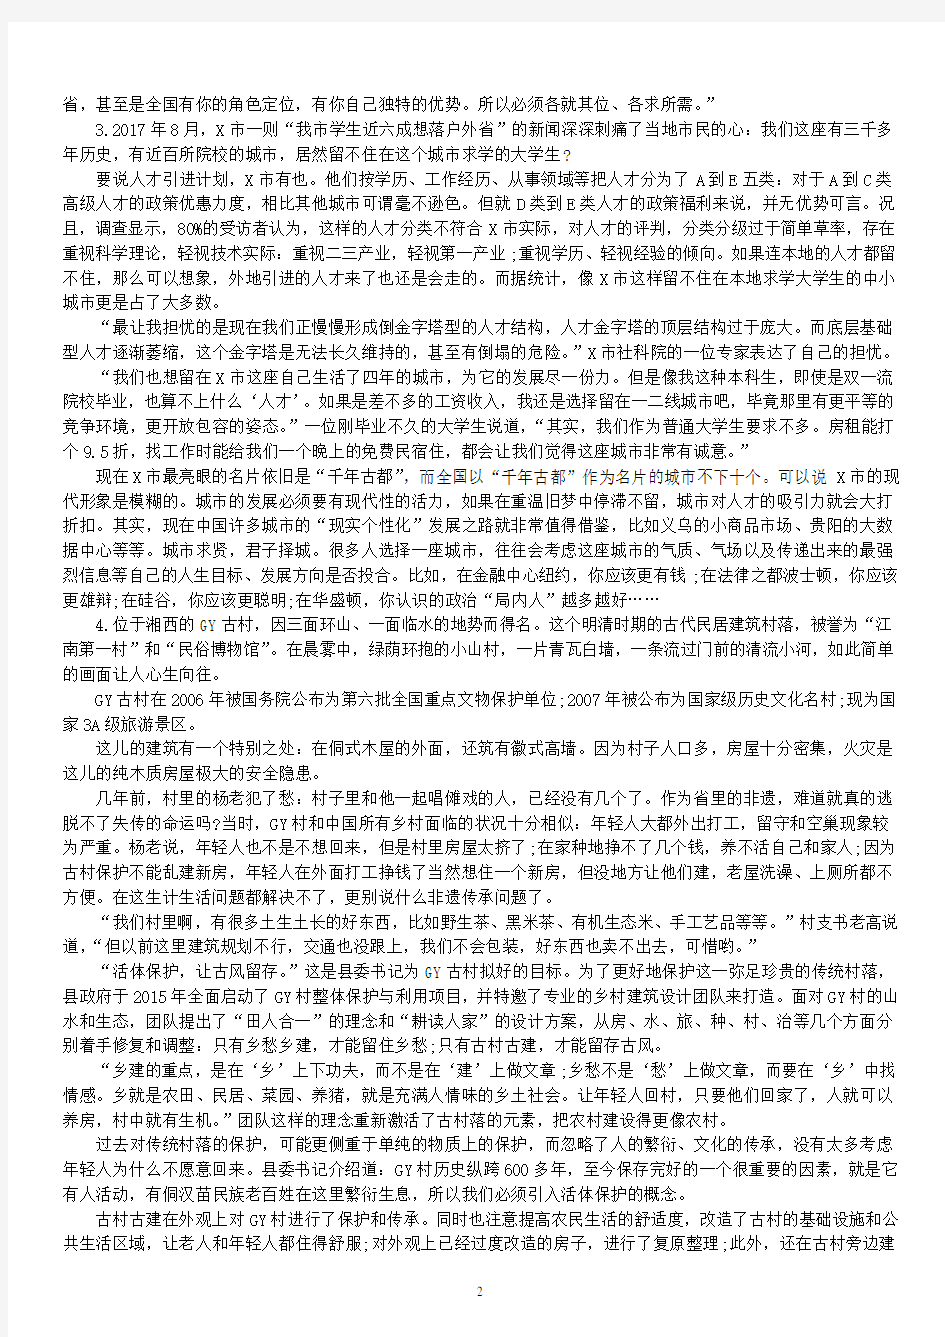 2018年宁夏自治区省公务员录用考试《申论》真题及标准答案